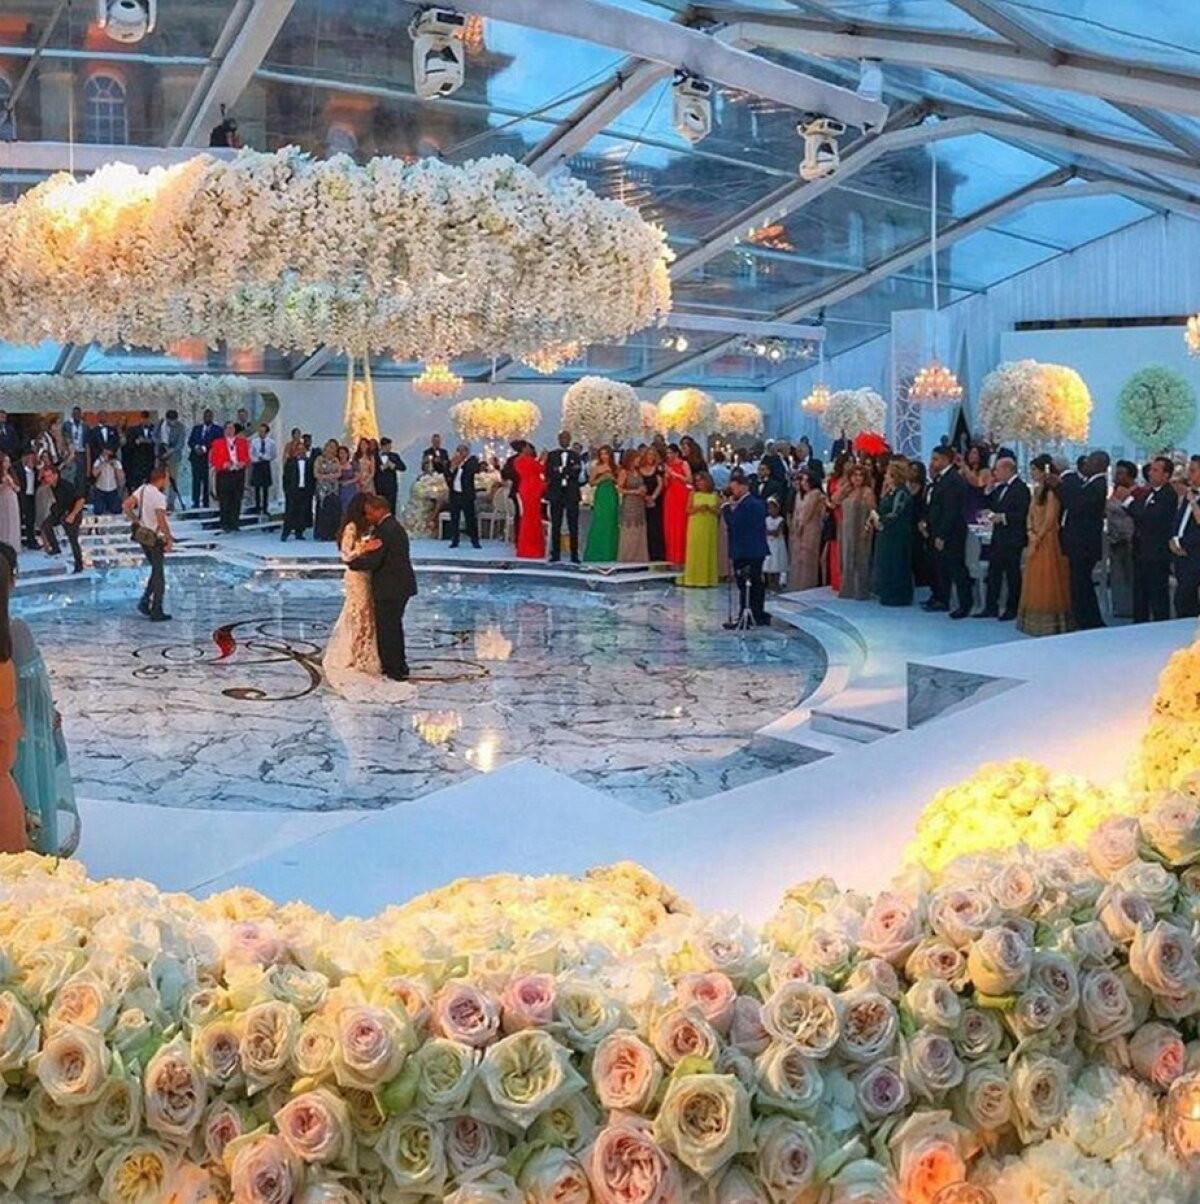 GALERIE FOTO & VIDEO Aşa ceva nu ai văzut niciodată. Aceasta este cea mai spectaculoasă nuntă din acest an!